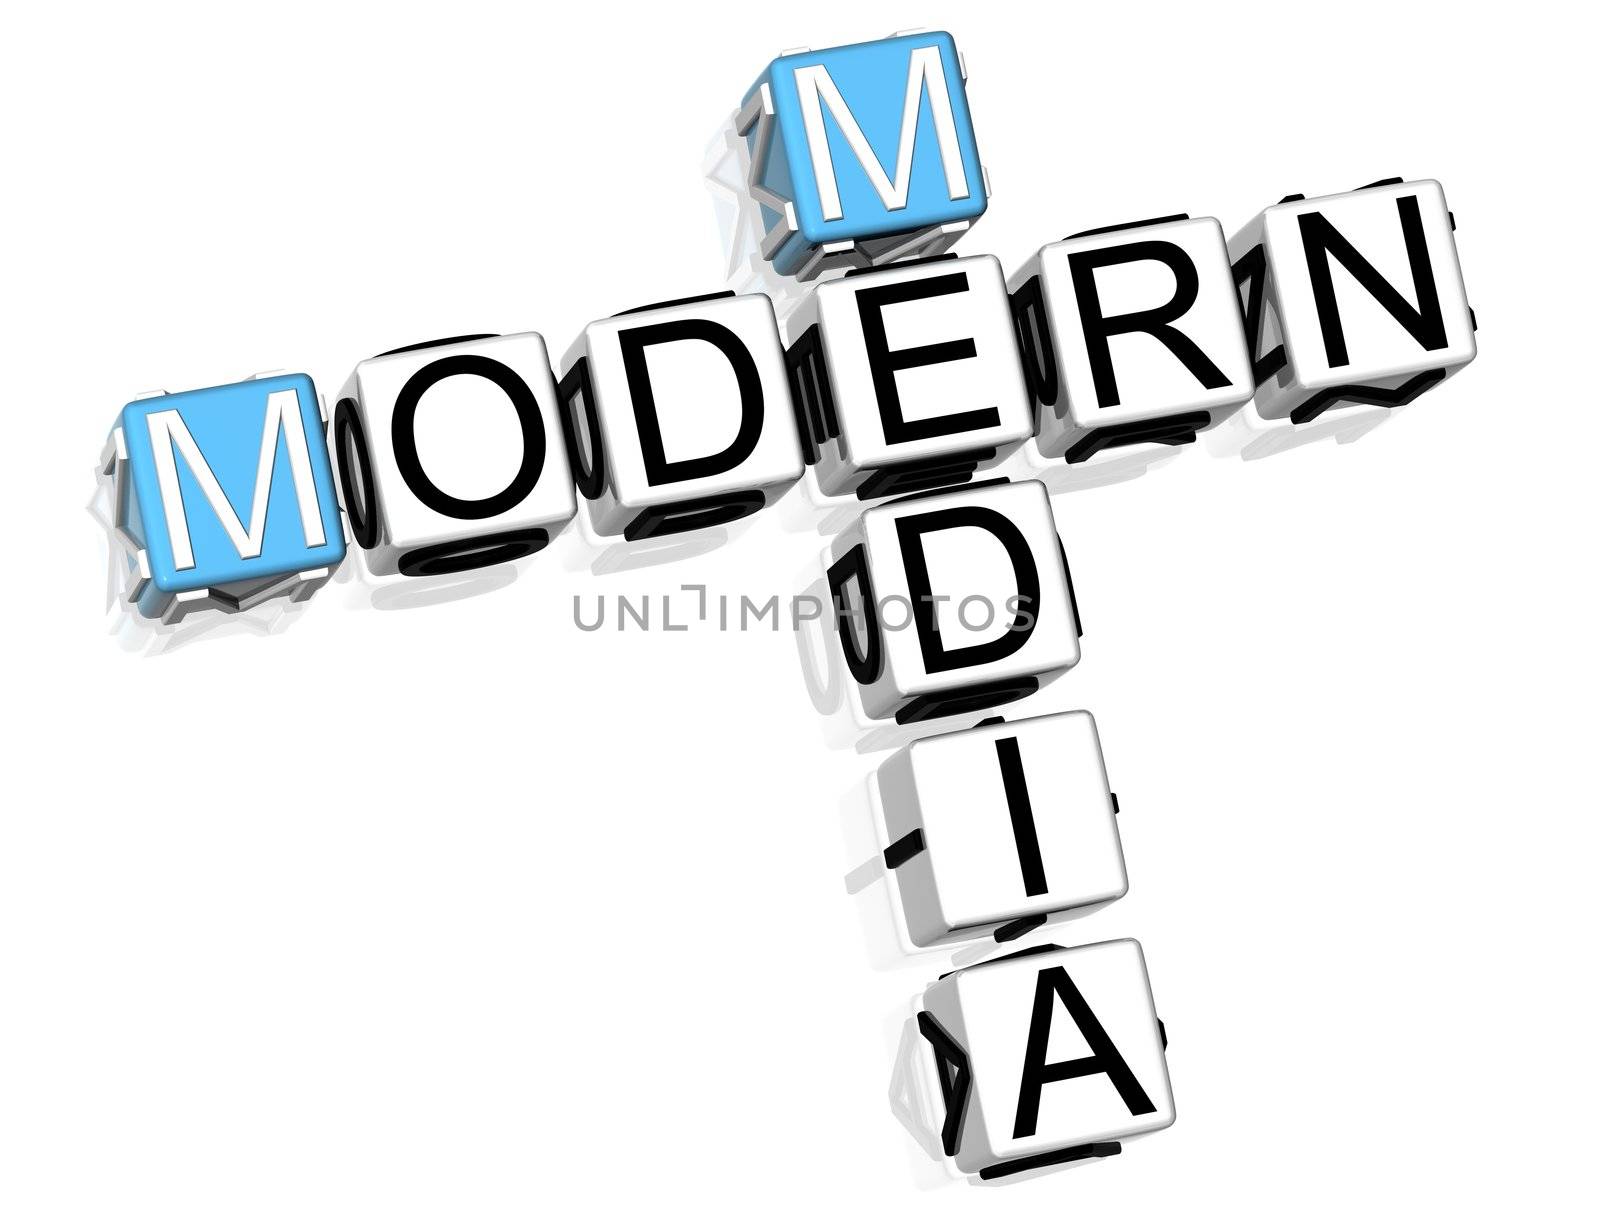 3D Modern Media Crossword  on white background